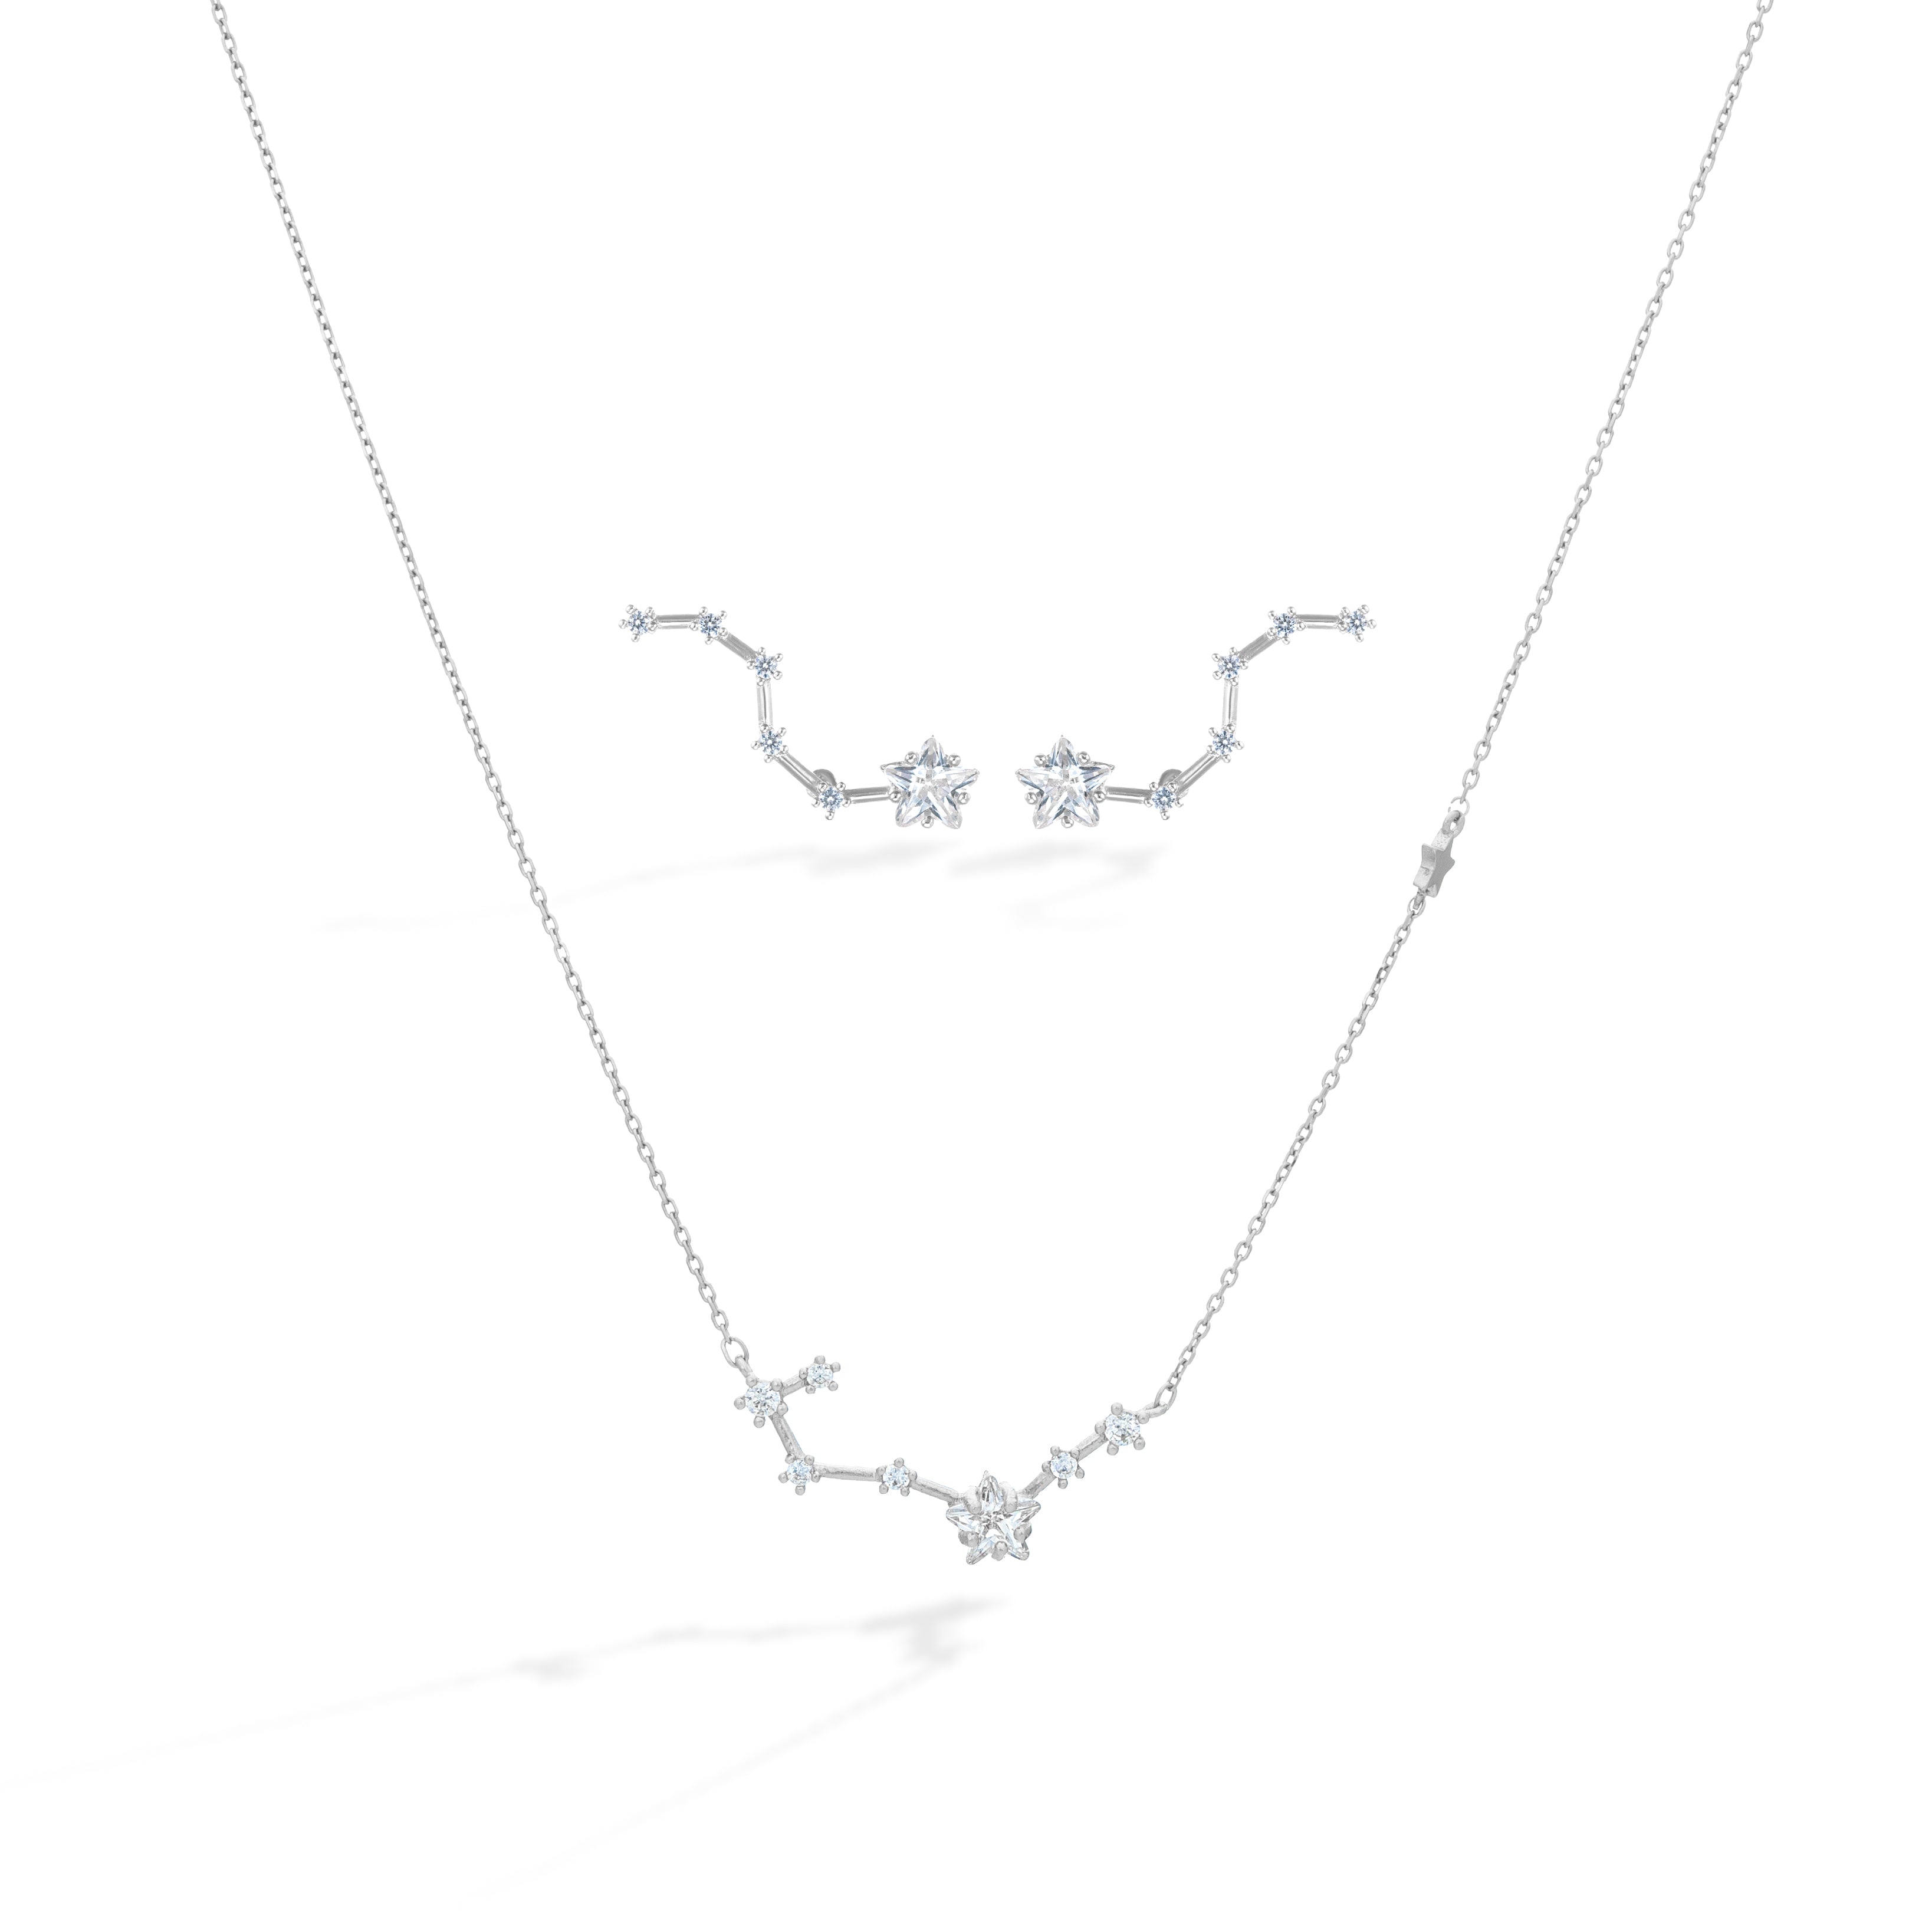 Shabella Necklaces Constellation Set